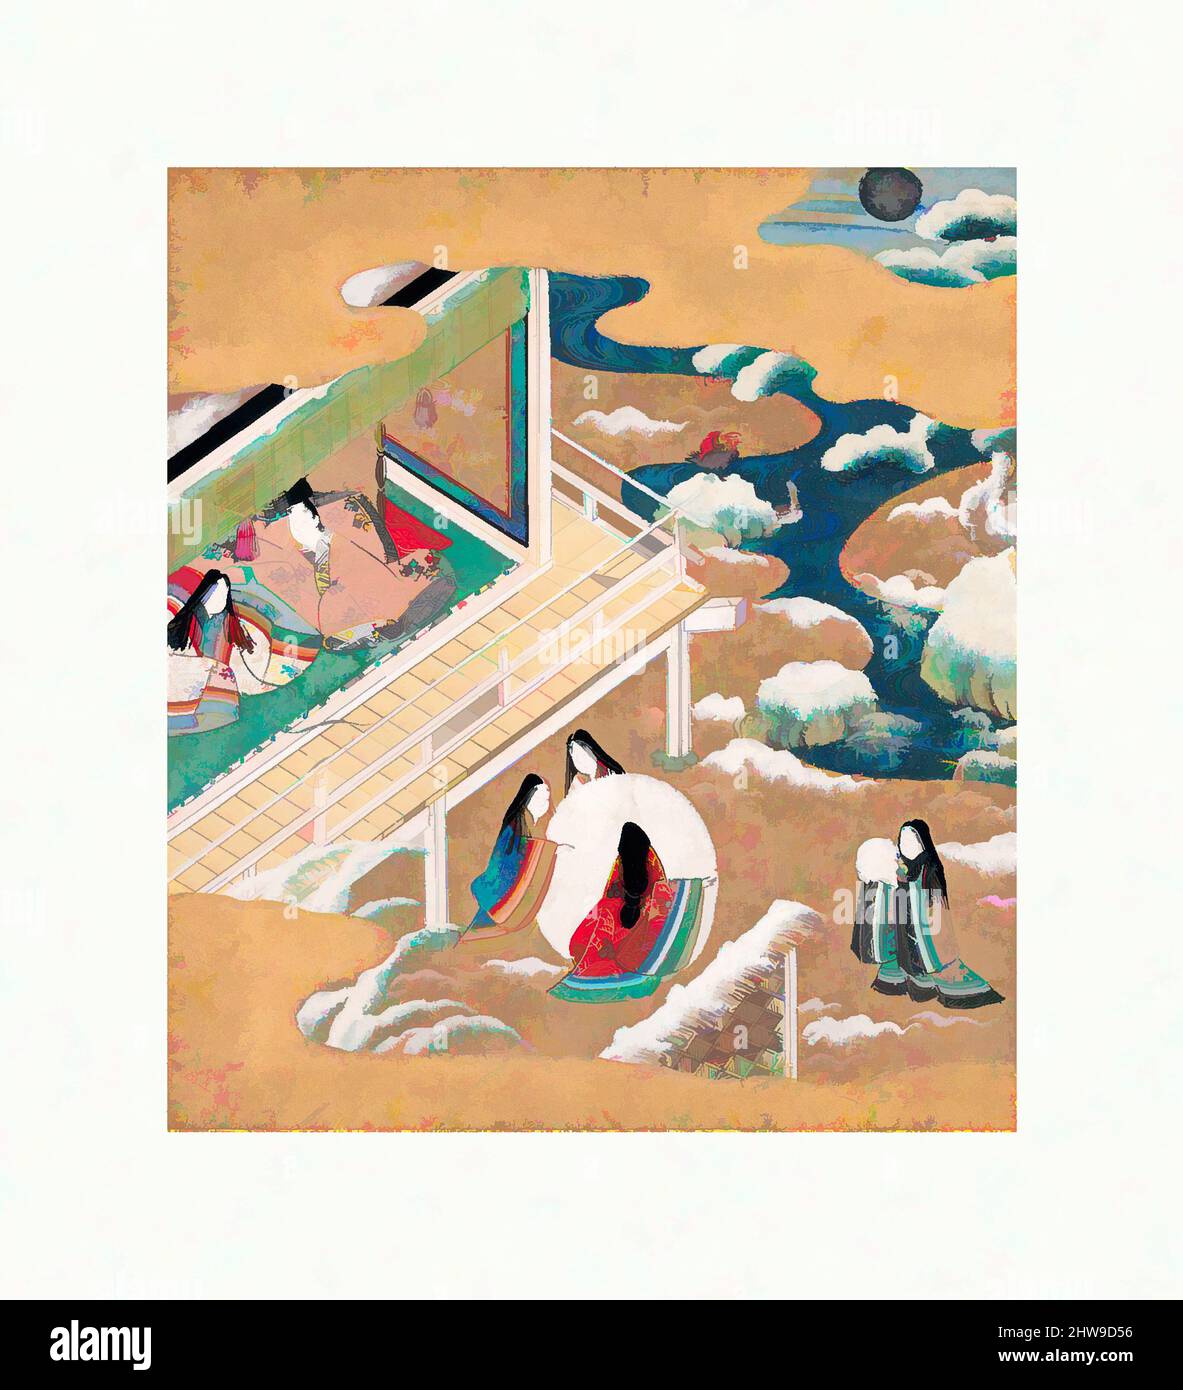 Art Inspired by Morning Glories' (Asagao), capitolo della tale di Genji (Genji monogatari), Edo period (1615–1868), inizio 17th secolo, Giappone, due album (piega a fisarmonica) con, Album: 8 9/16 x 7 7/8 x 2 1/2 pollici. (21,8 x 20 x 6,3 cm), dipinti, Scuola Tosa, opere classiche modernizzate da Artotop con un tuffo di modernità. Forme, colore e valore, impatto visivo accattivante sulle emozioni artistiche attraverso la libertà delle opere d'arte in modo contemporaneo. Un messaggio senza tempo che persegue una nuova direzione selvaggiamente creativa. Artisti che si rivolgono al supporto digitale e creano l'NFT Artotop Foto Stock